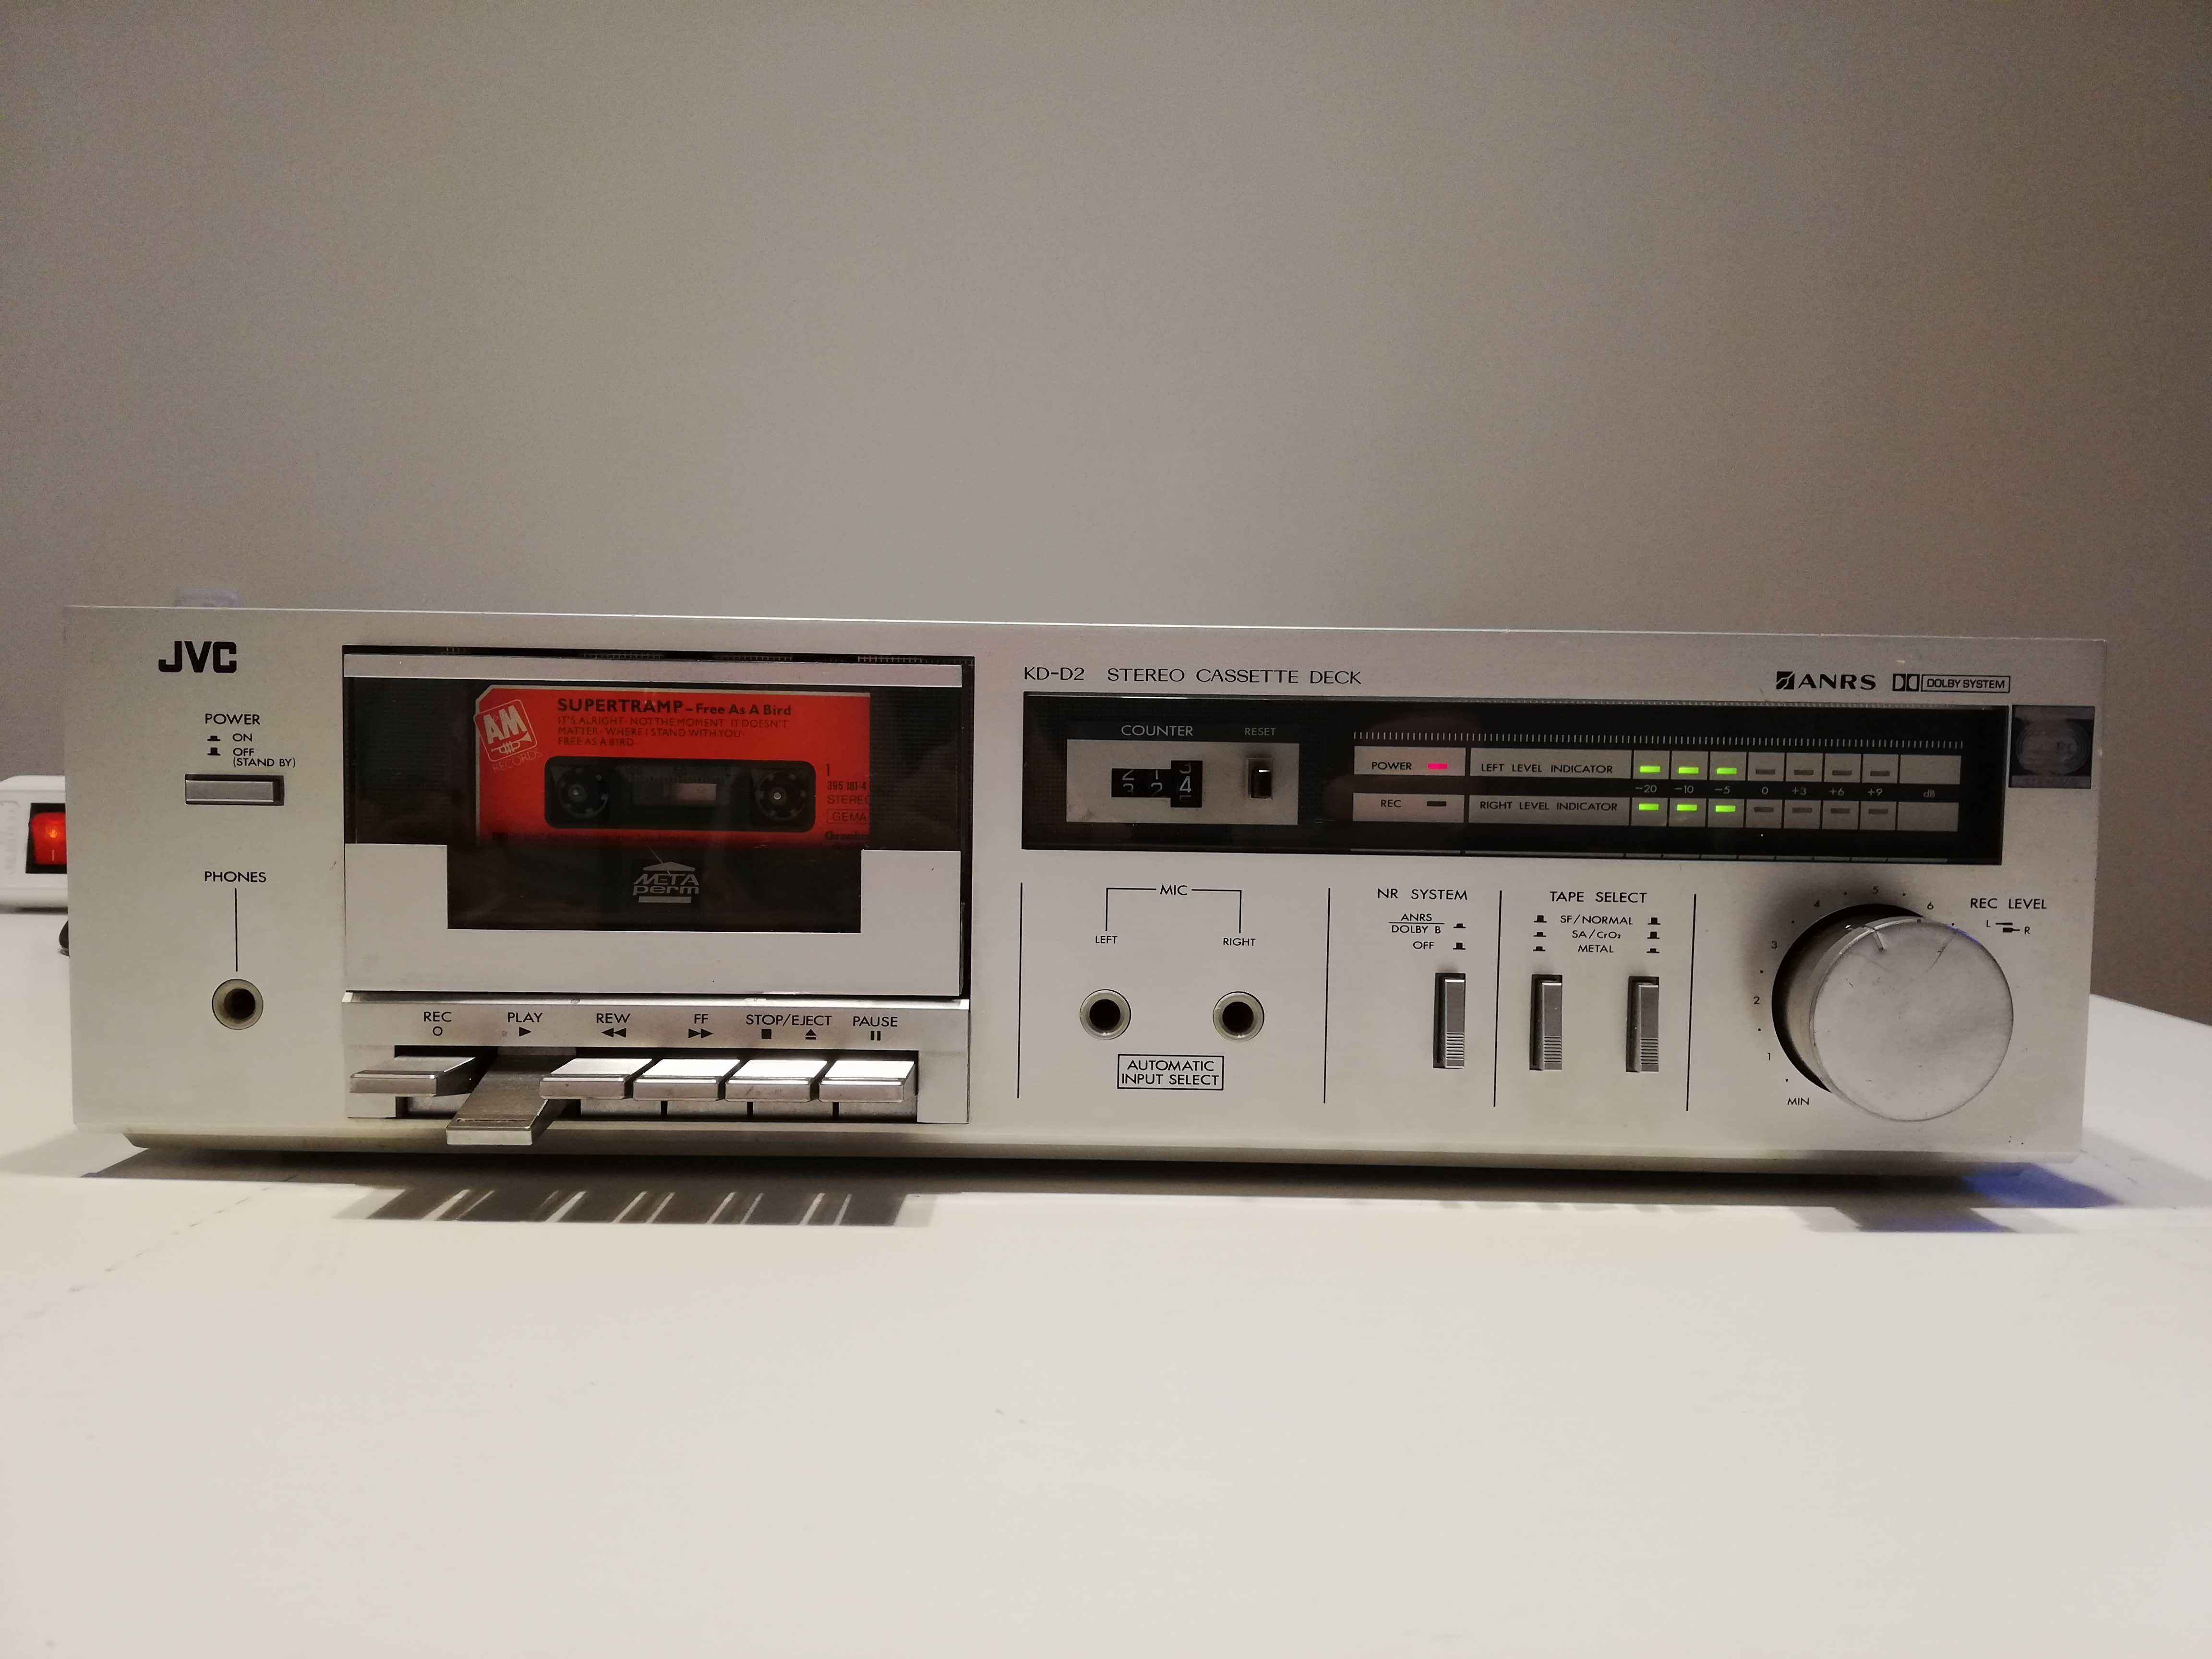 Stereo Cassette Deck JVC model KD-D2E - Impecabil/Vintage/Japan